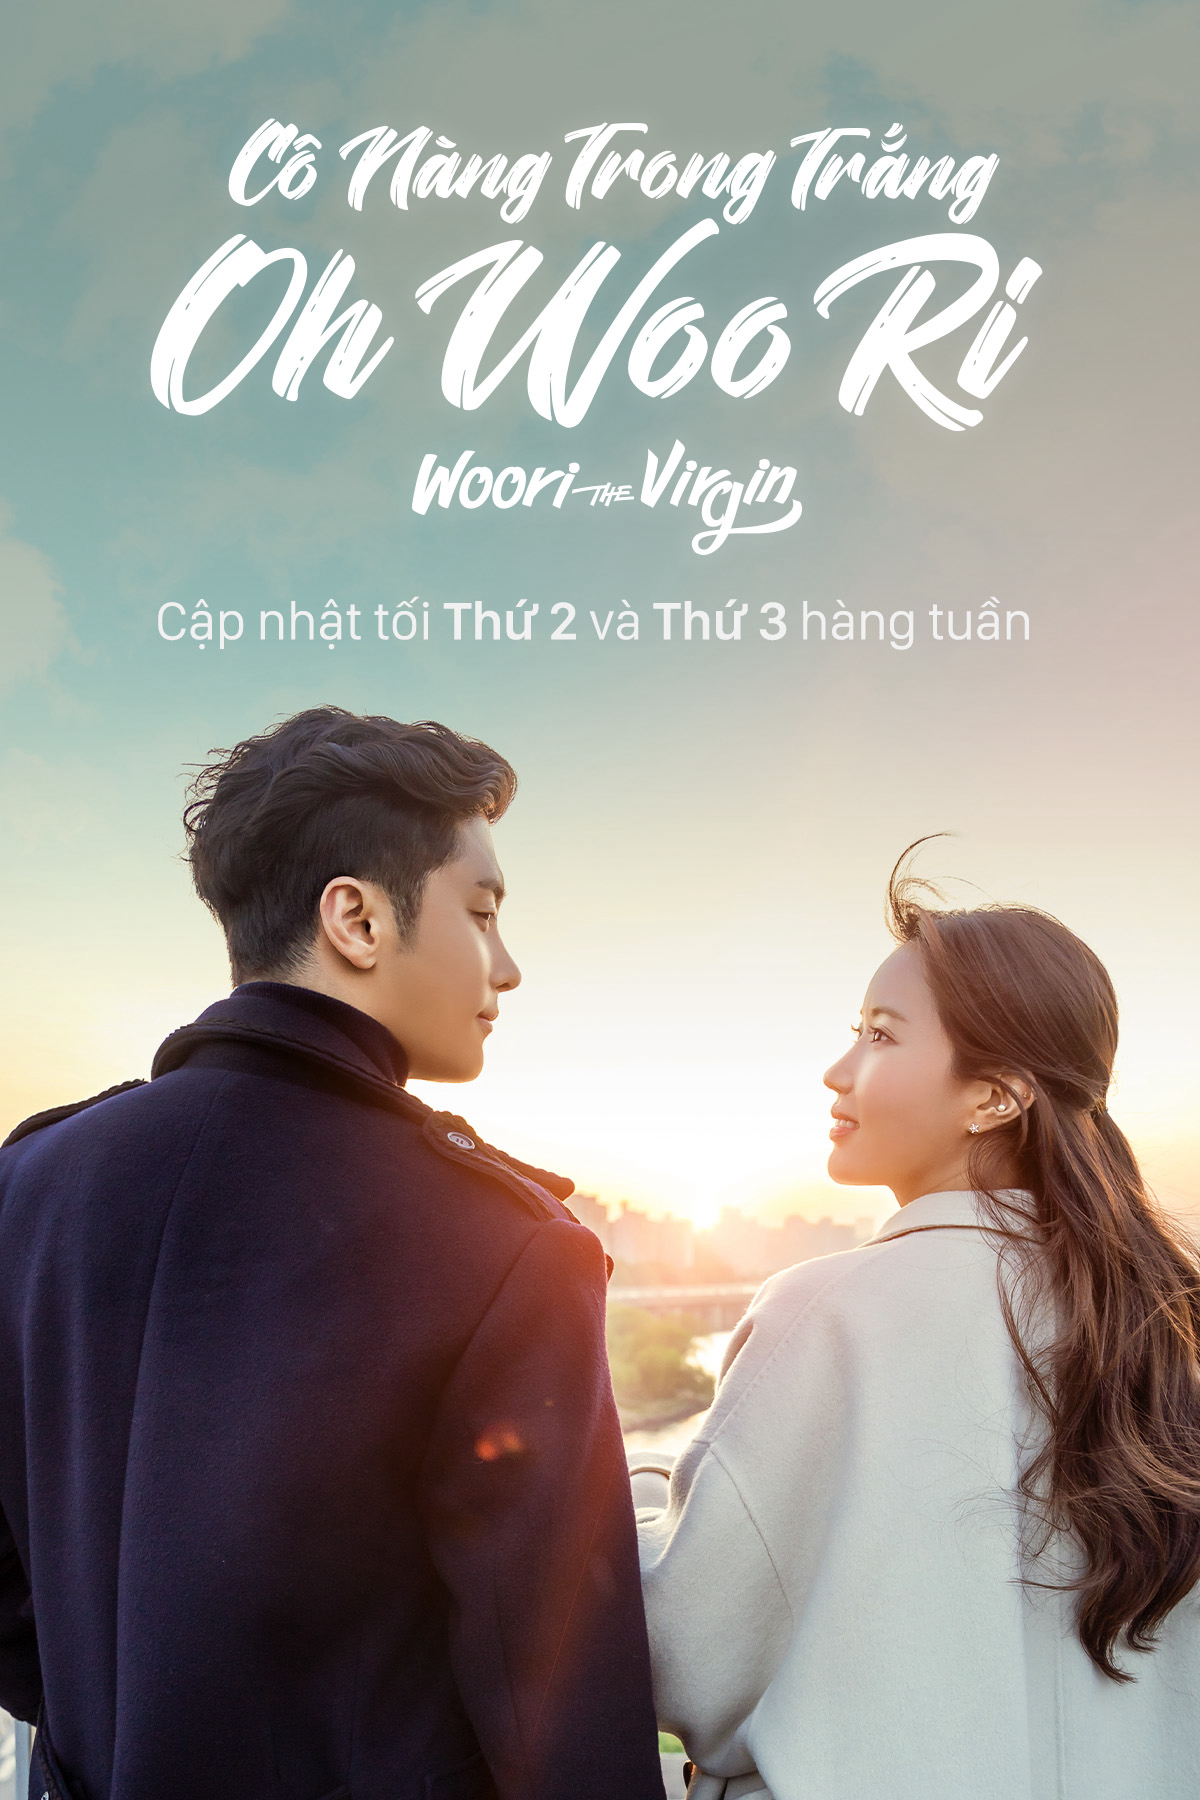 Banner Phim Cô Nàng Trong Trắng Oh Woo Ri (Woori The Virgin)